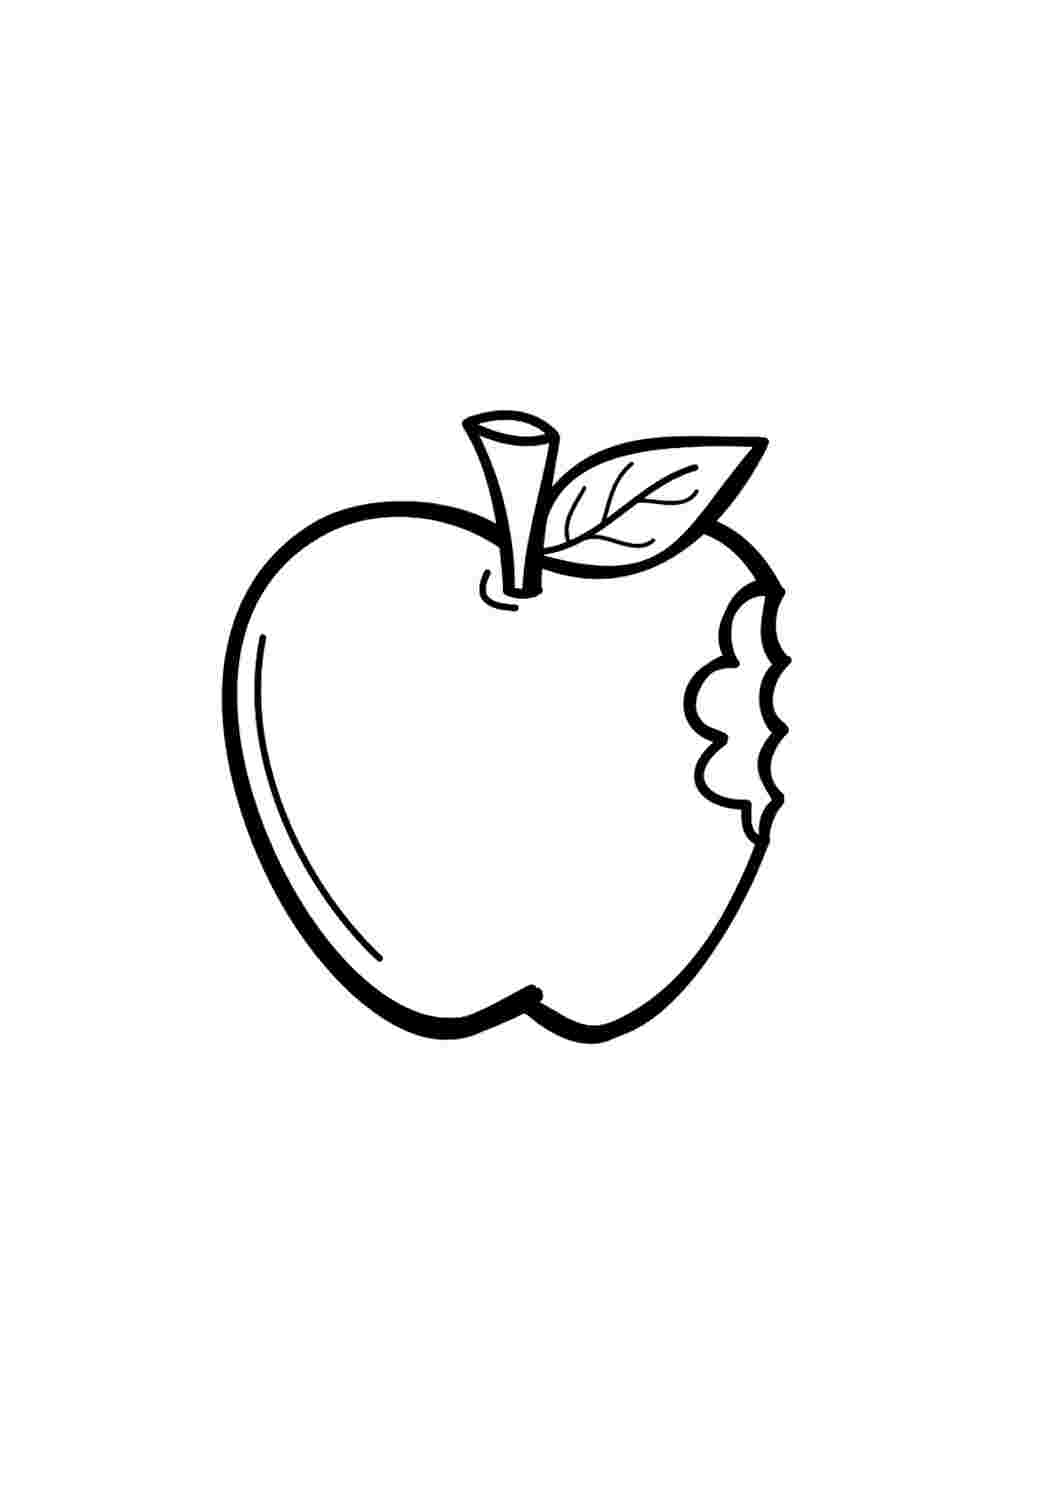 Яблоко рисунок раскраска